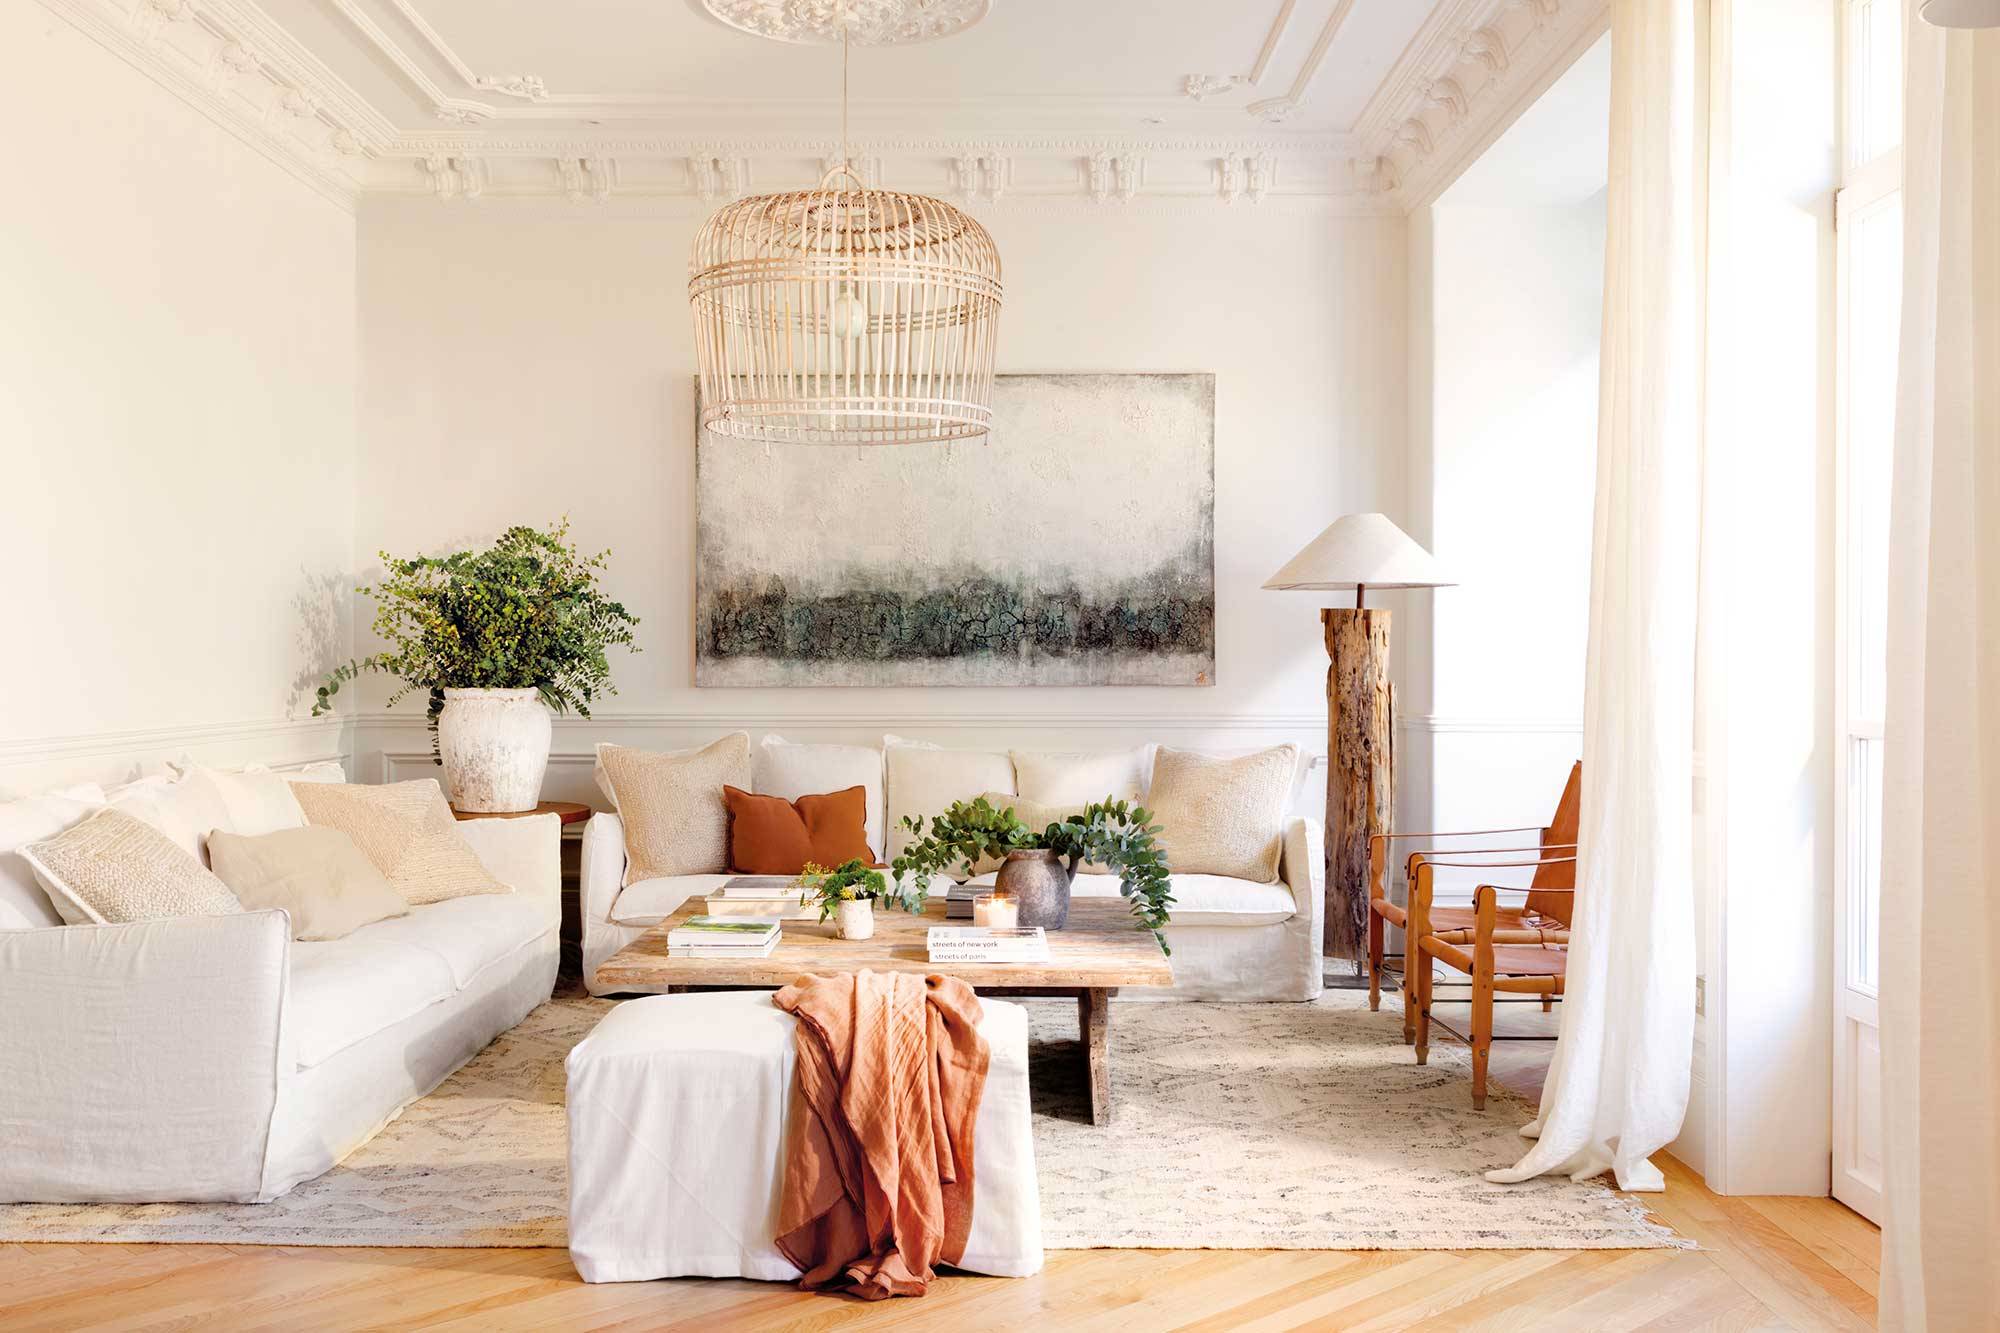 Salón señorial decorado en blanco y madera con sofás de lino y un cuadro en la pared 00532058